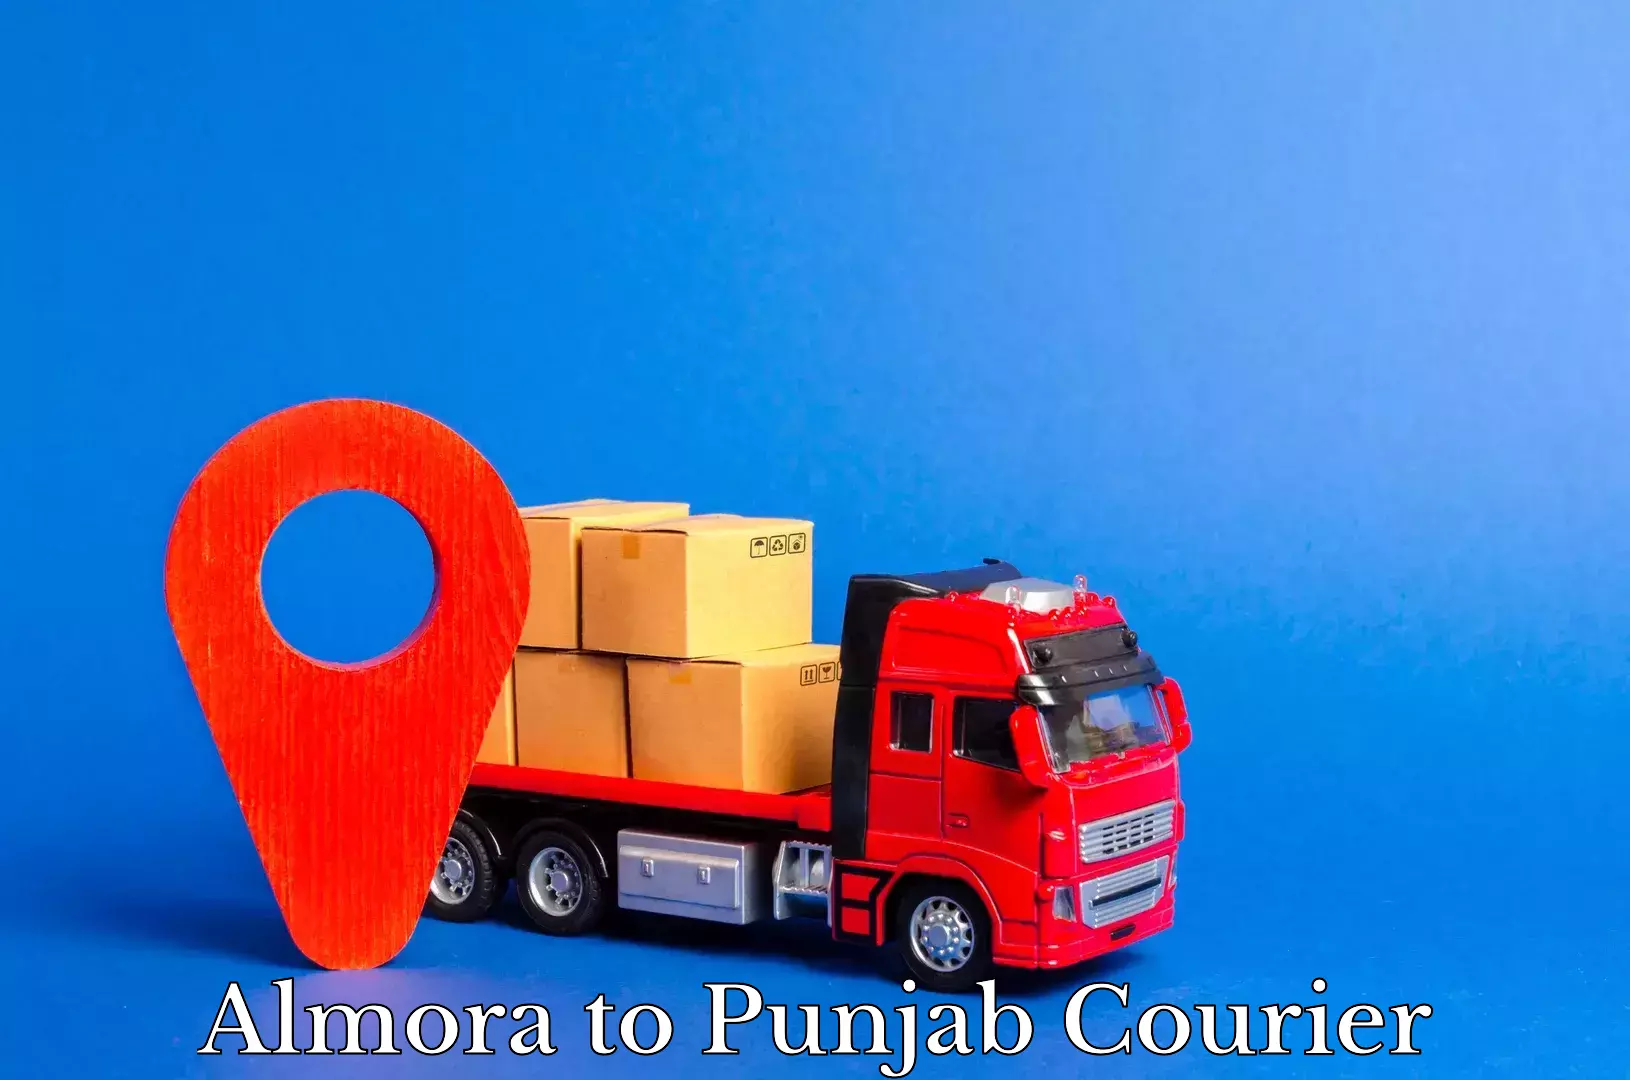 Multi-city courier Almora to Punjab